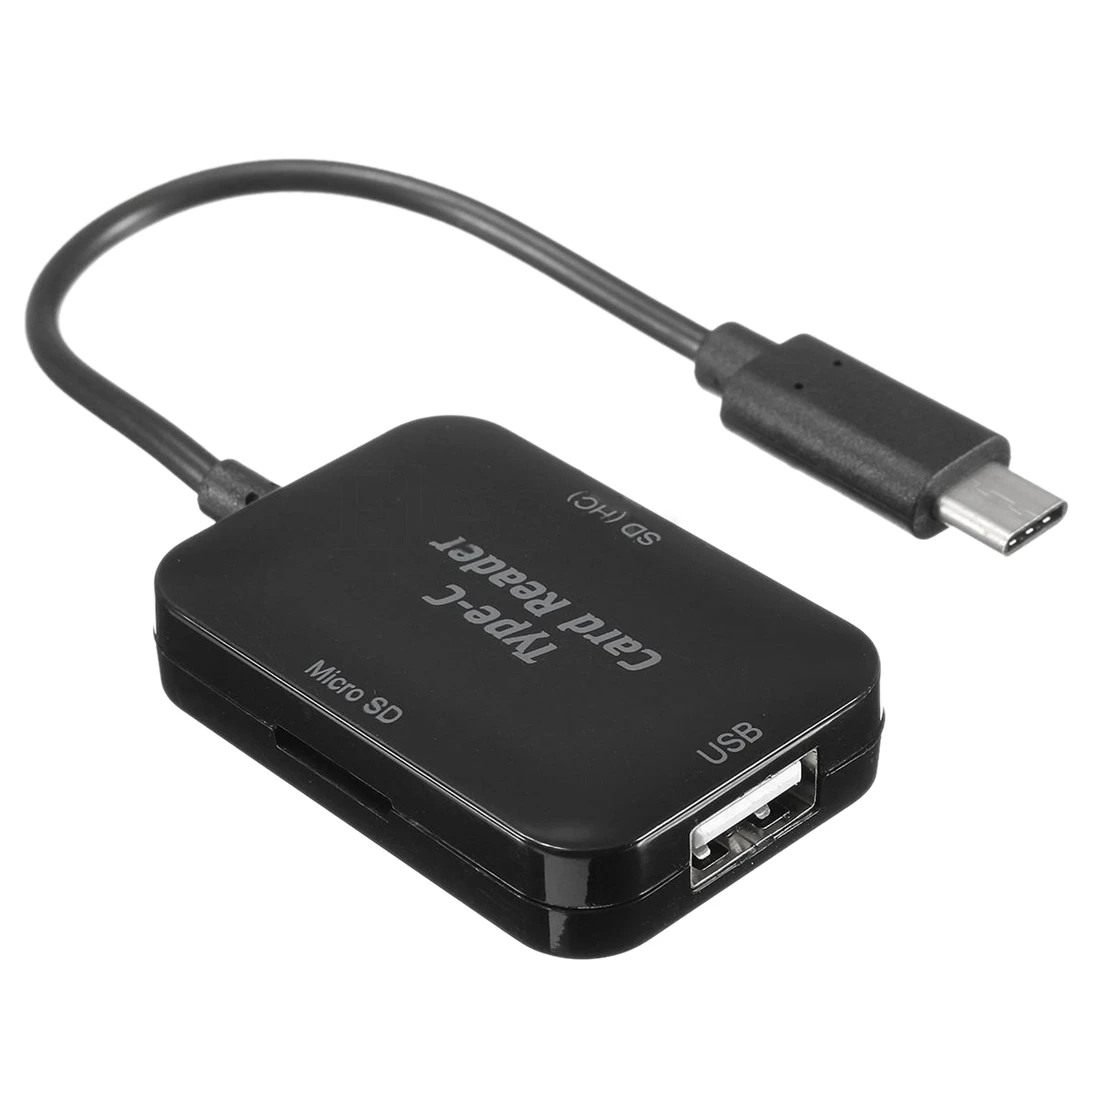 Тип USB c USB 2.0 концентратор SD TF картридер OTG адаптер для MacBook 12 дюймов черный